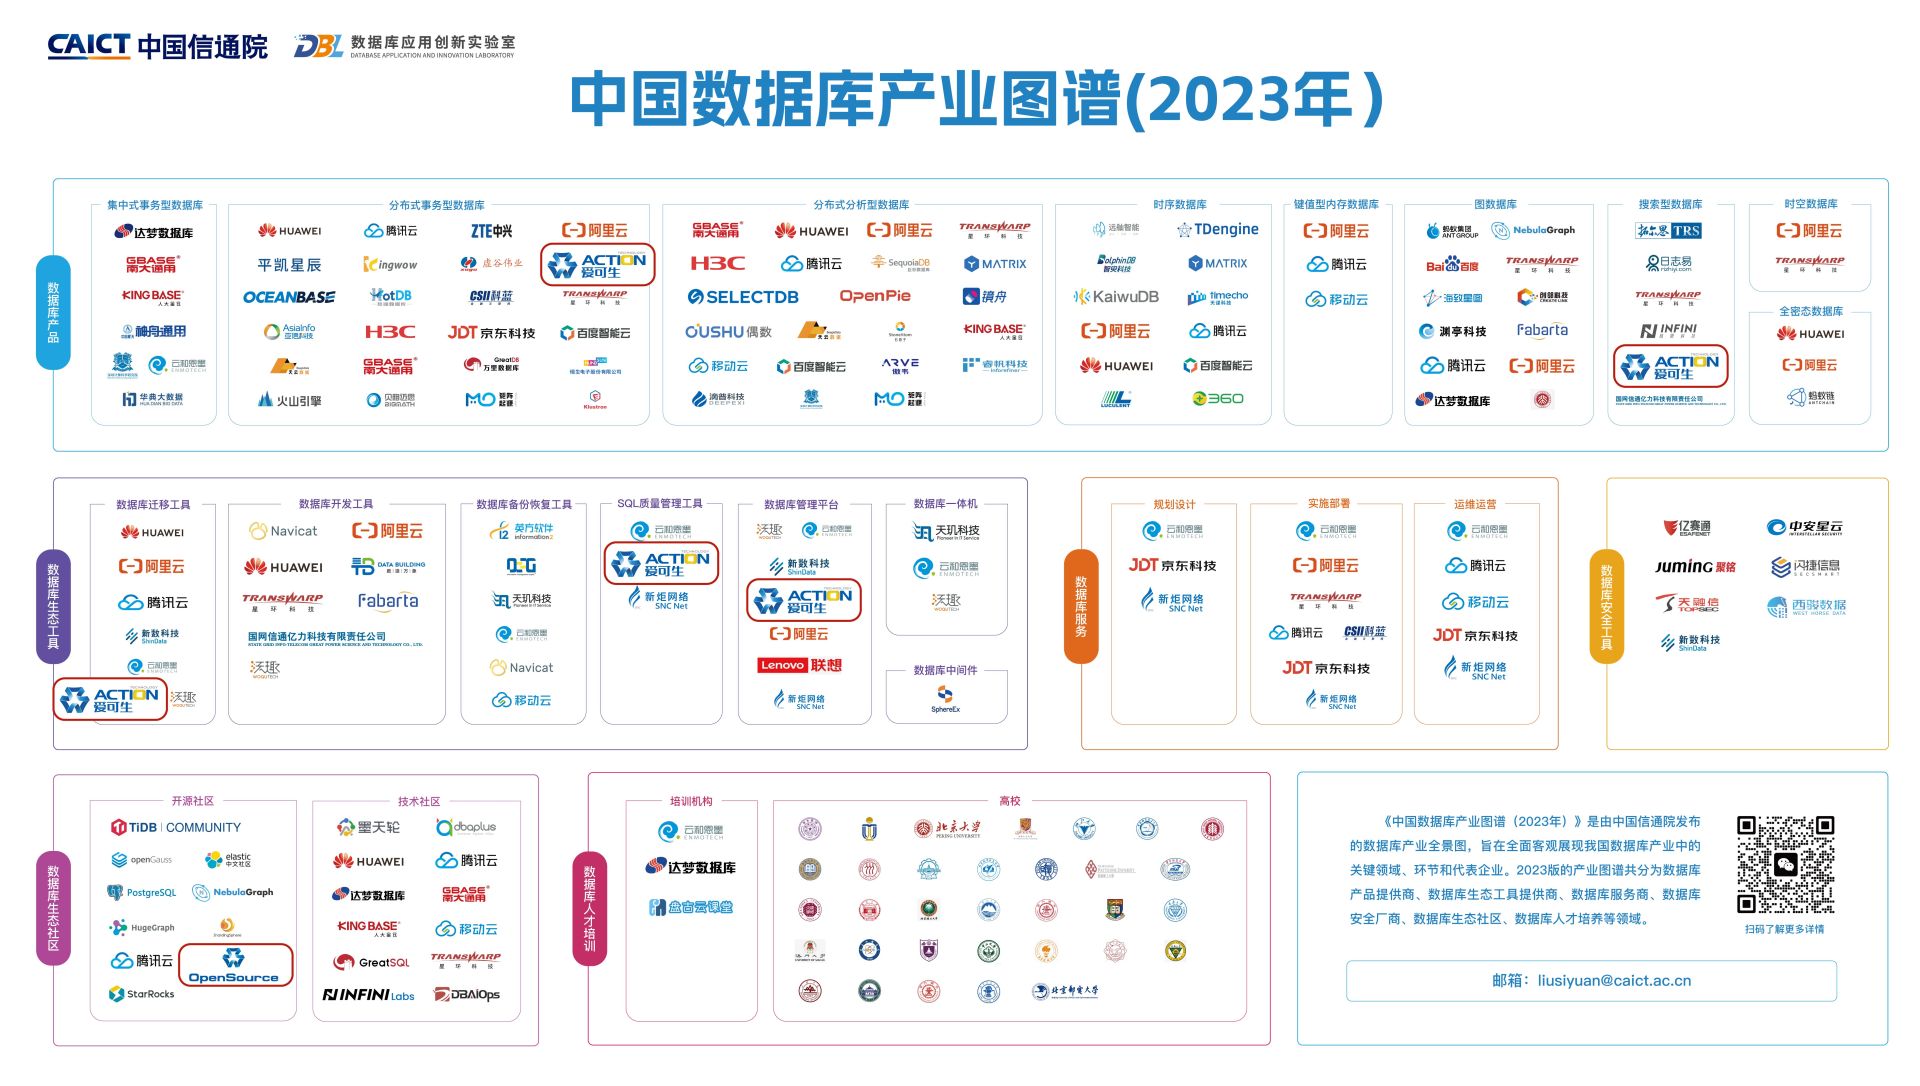 爱可生数据库 5 款产品以及开源社区上榜《中国数据库产业图谱（2023年）》